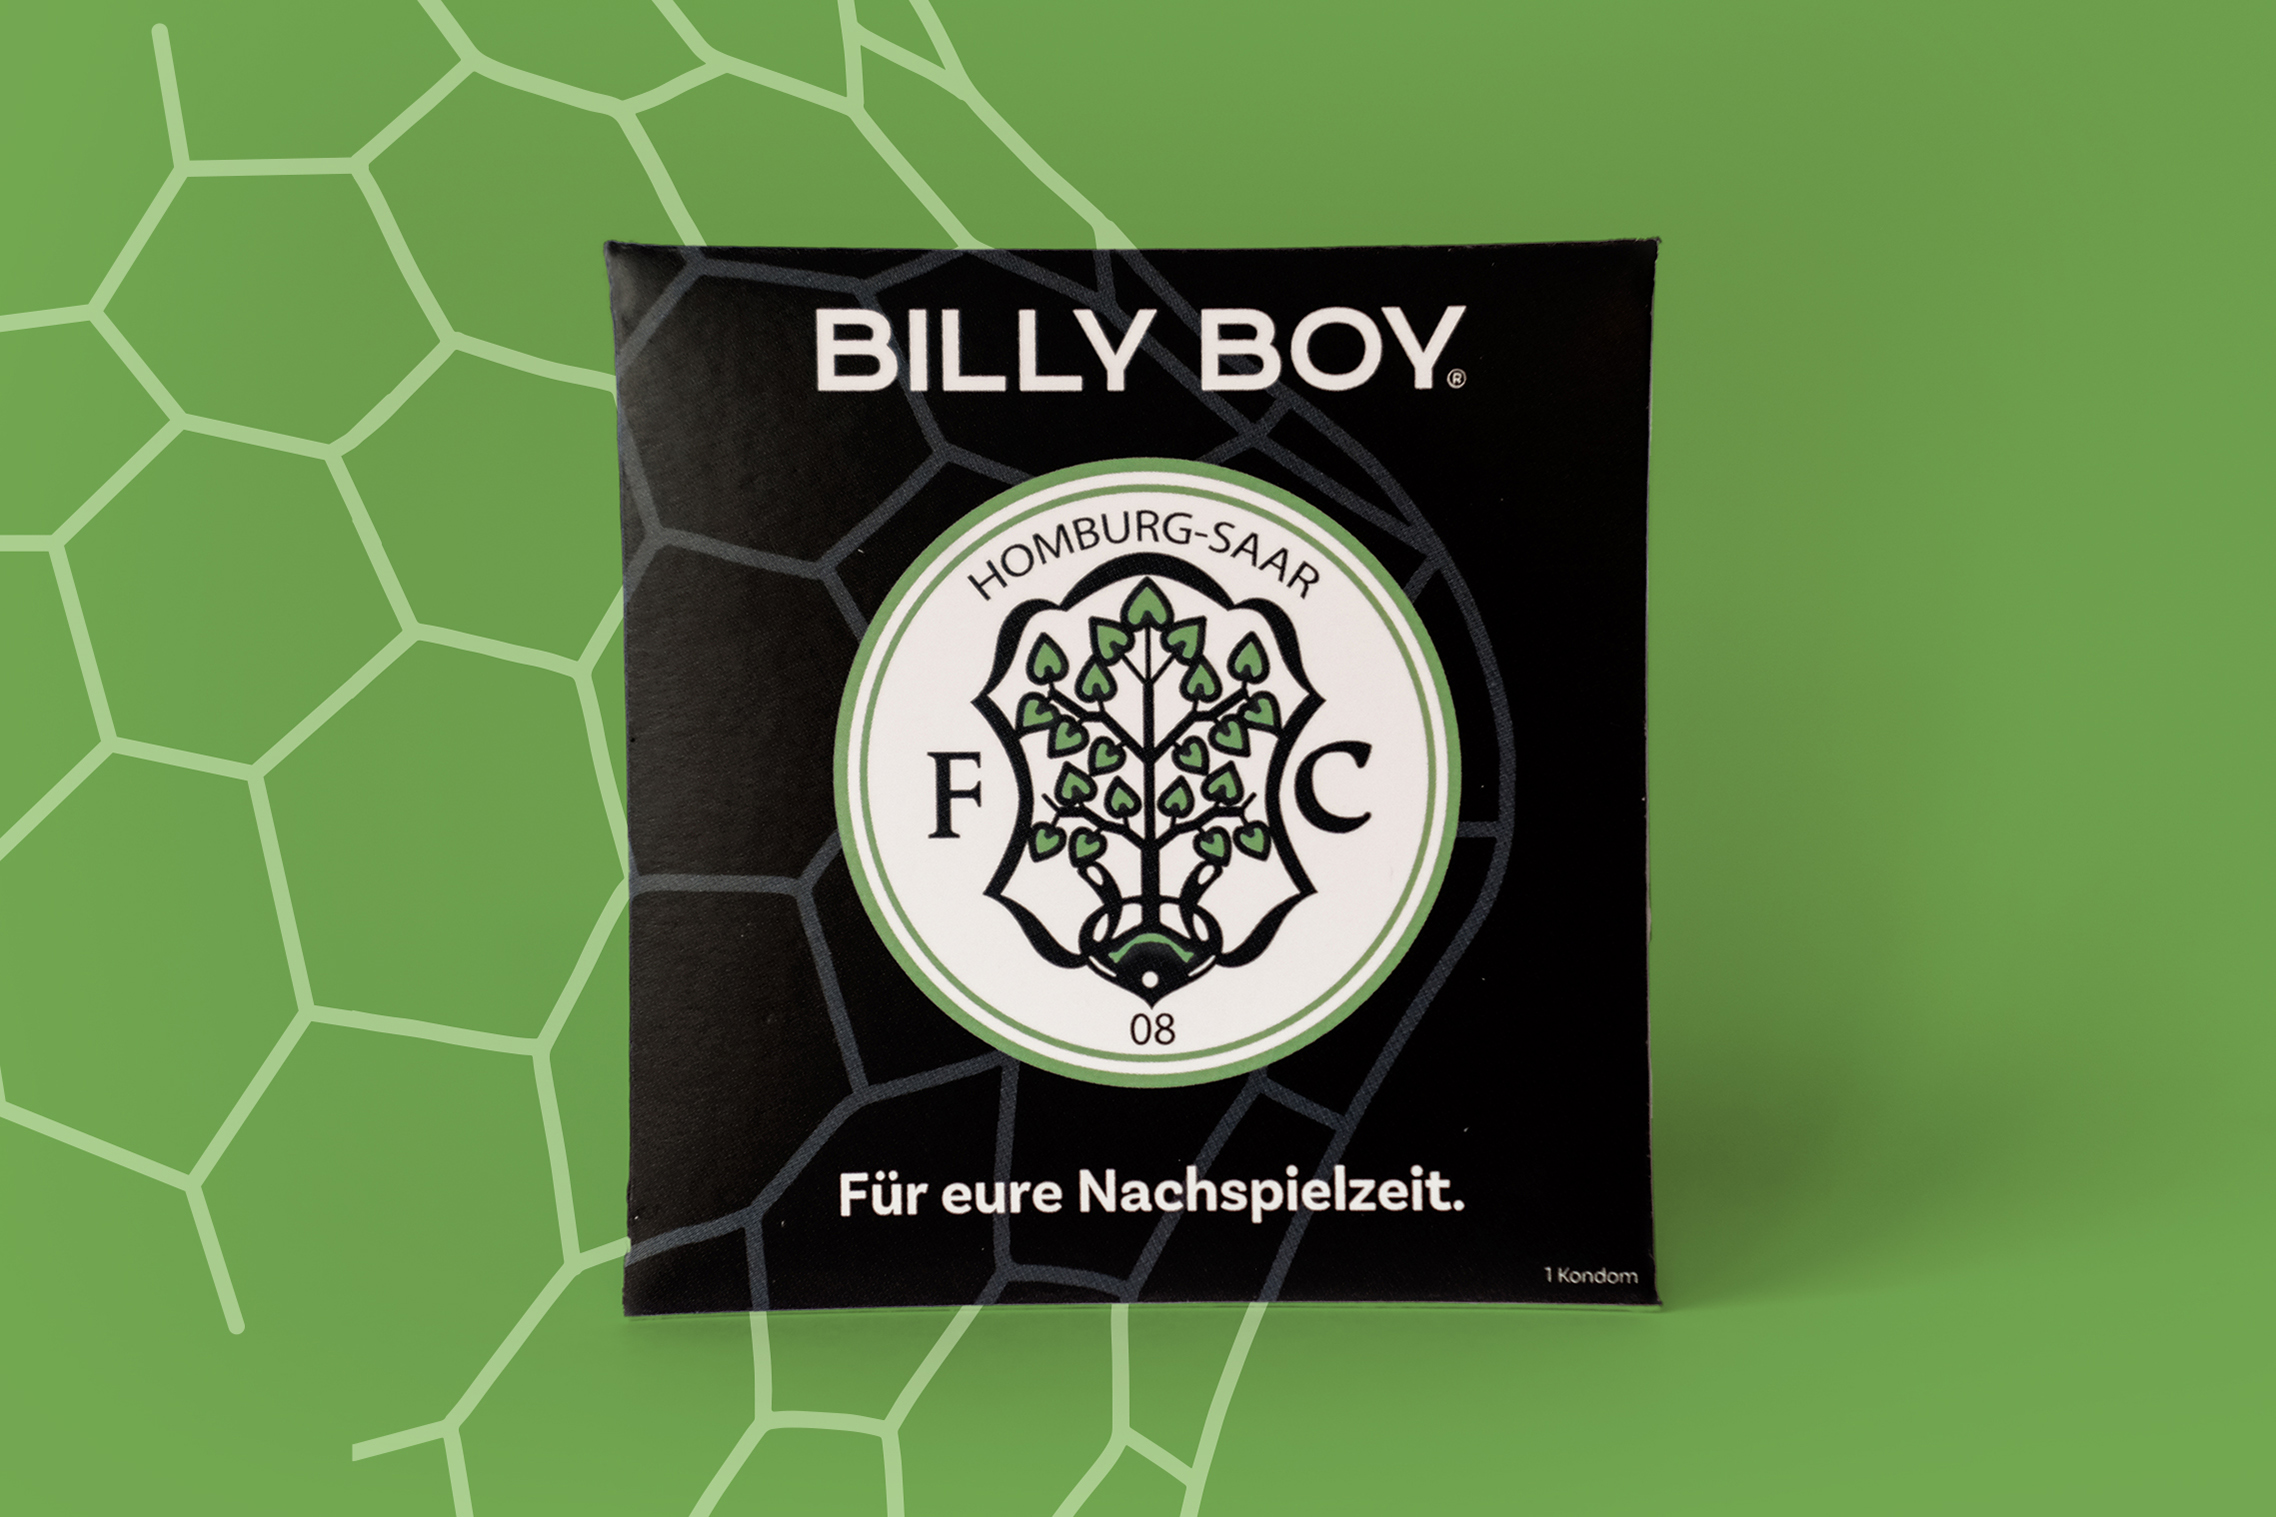 Billy Boy & FC Homburg Werbekondomverpackung